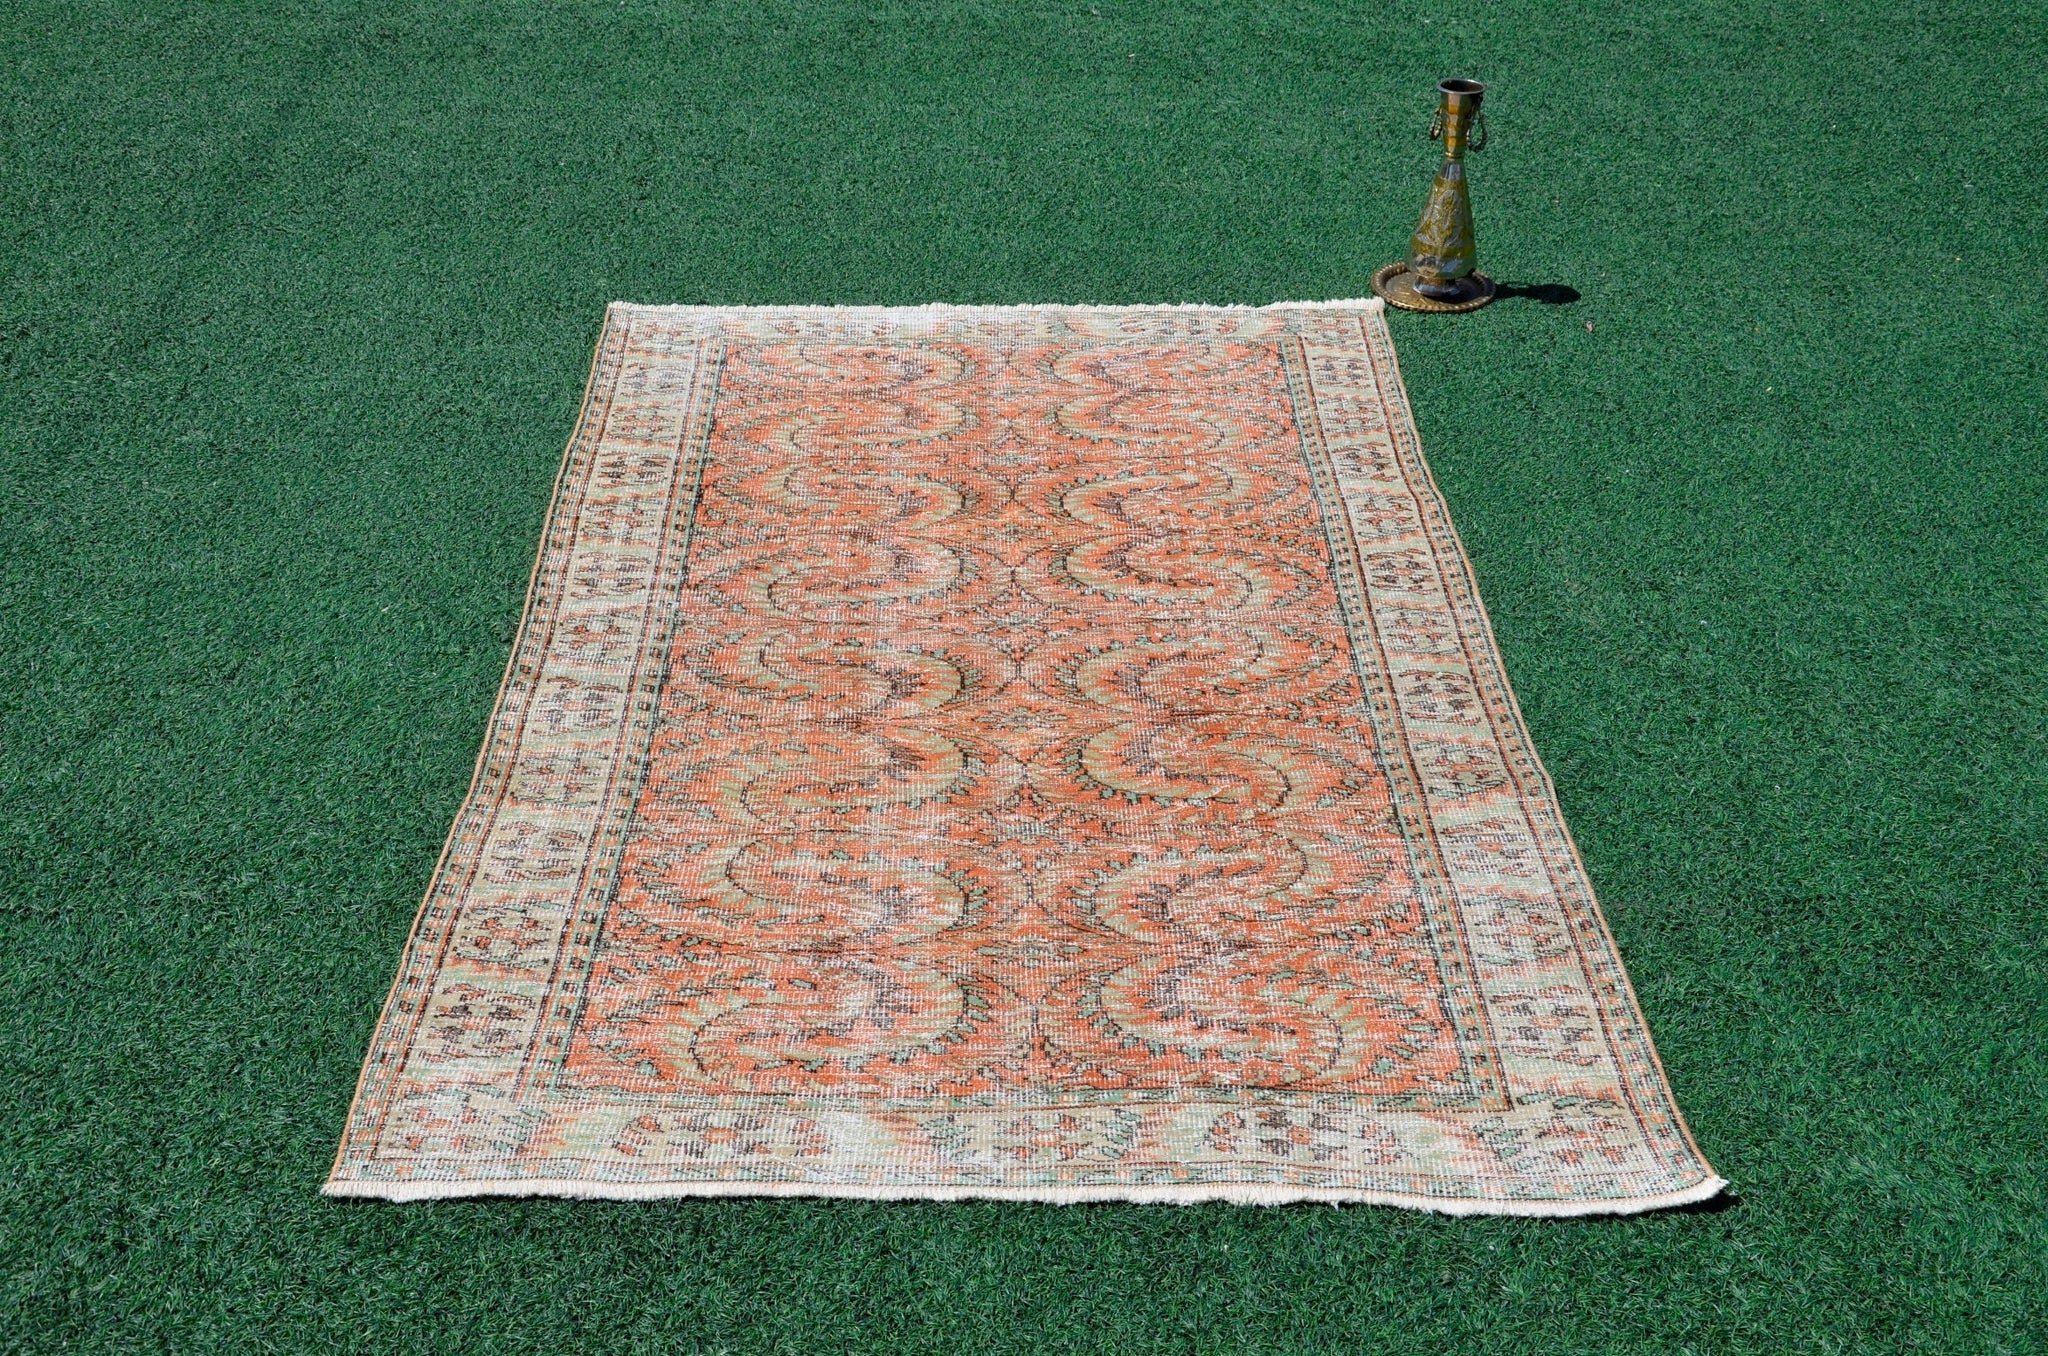 Turkish Handmade large Vintage rug for home decor, oversize rug, area rug oushak rug boho rug bedroom rug kitchen rug  kilim rug, rugs 5x8, 666241